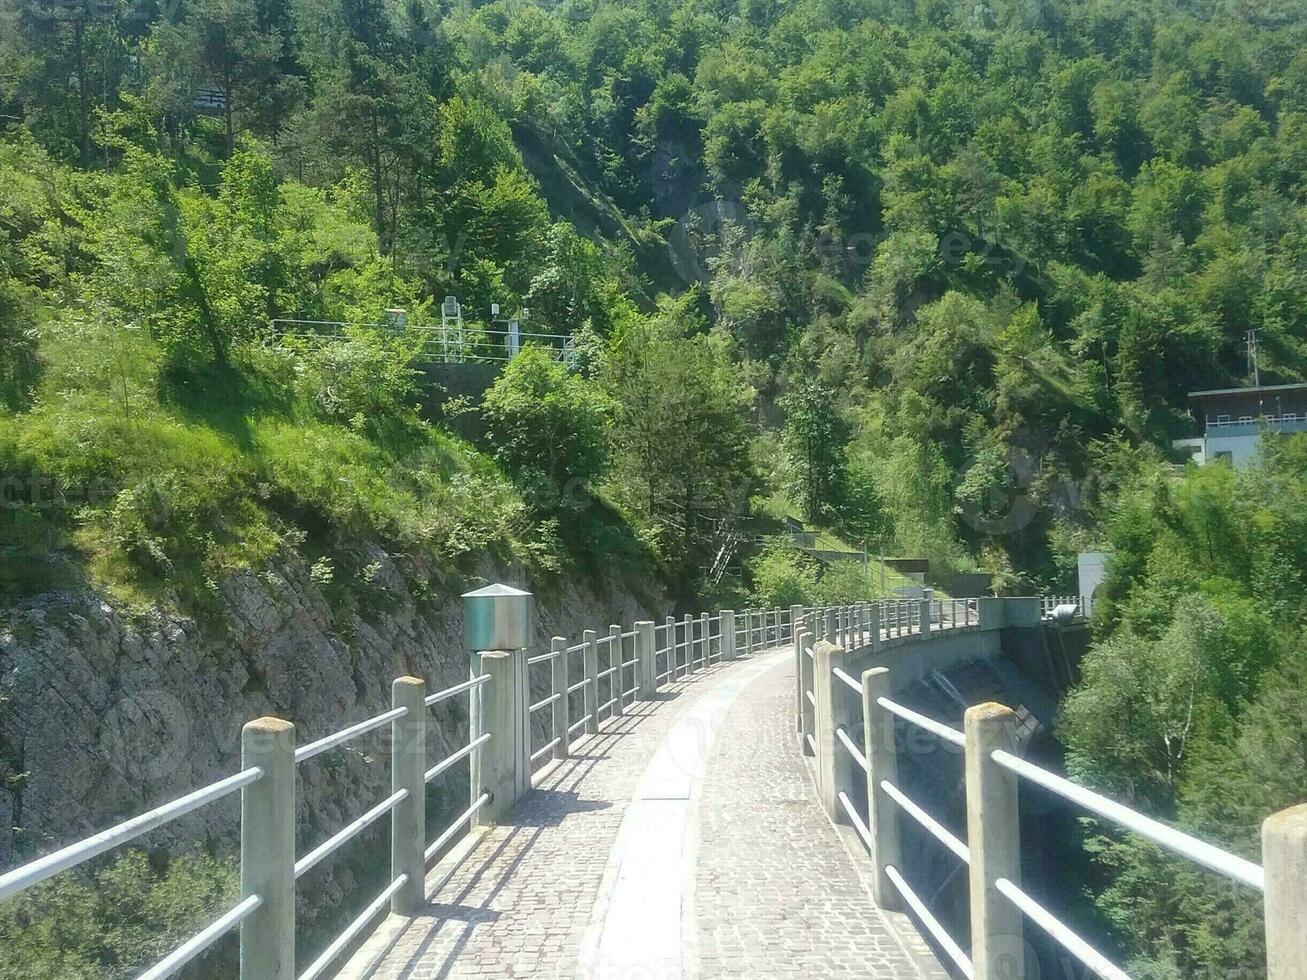 een metaal voetganger brug hieronder de hydro-elektrisch dam foto